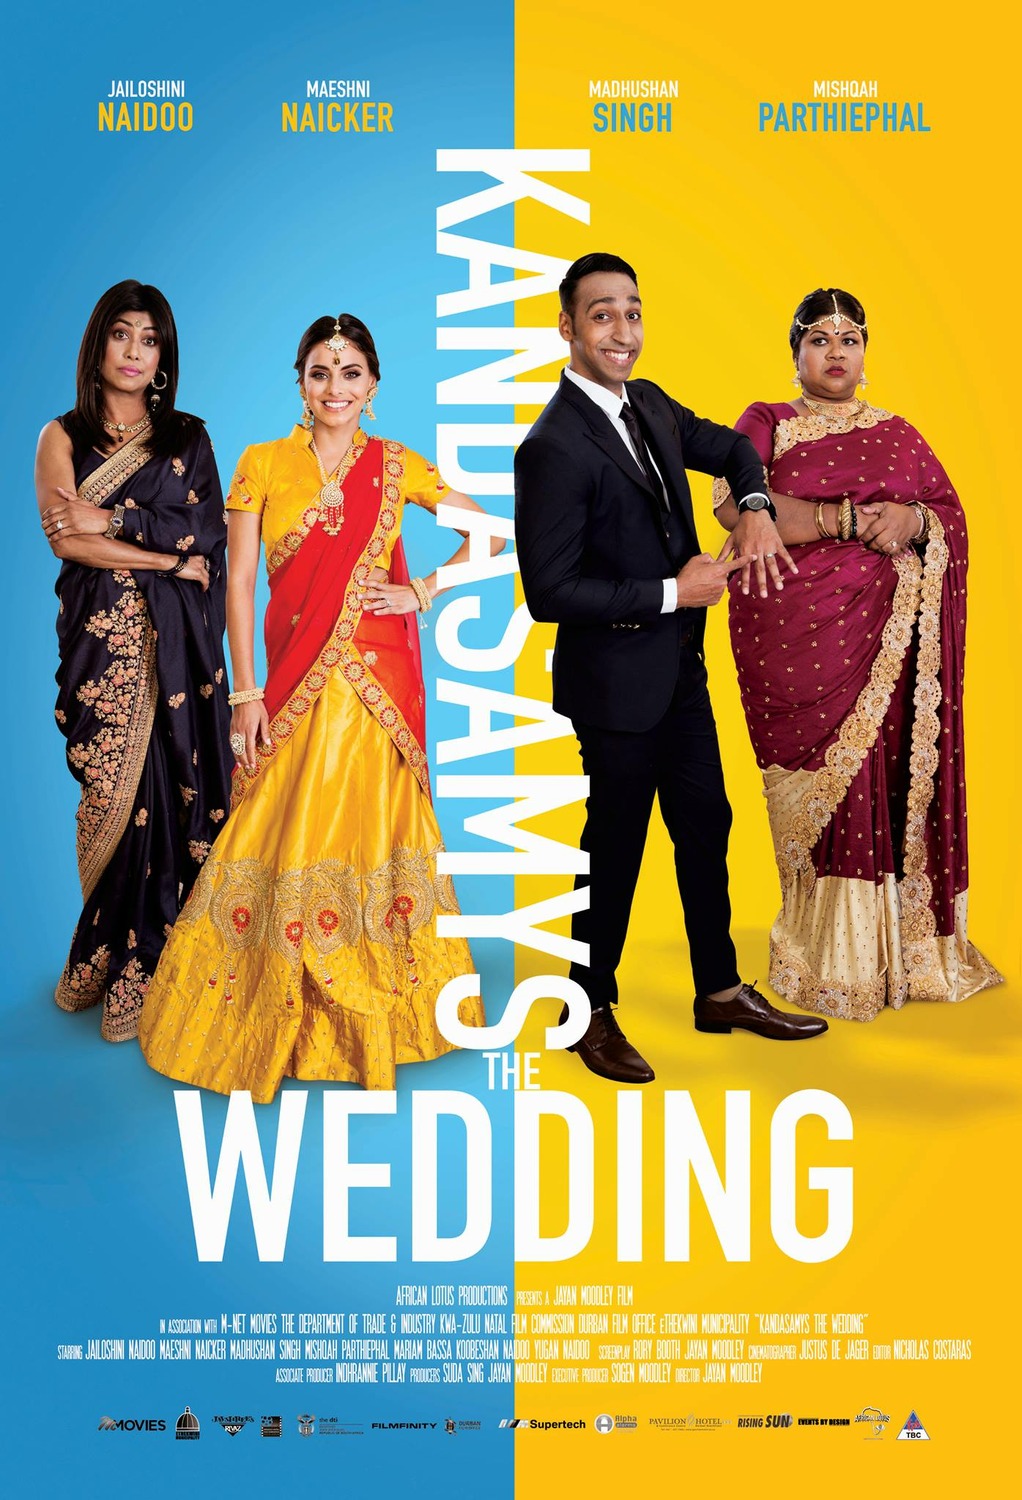 Extra Large Movie Poster Image for Kandasamys: The Wedding 